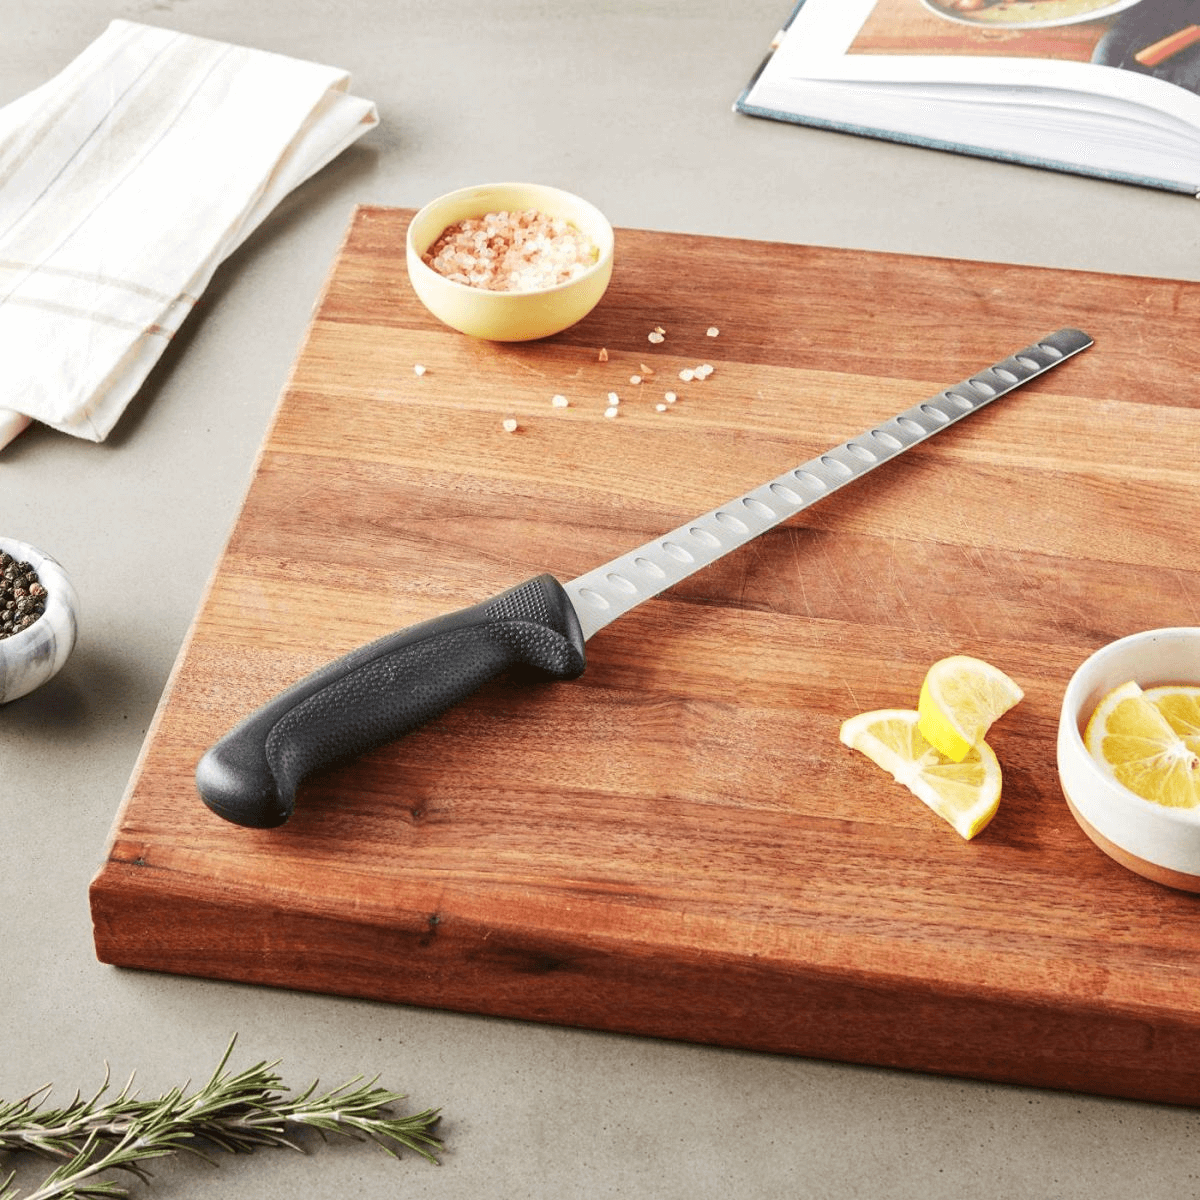 Làm việc liên tục với tốc độ nhanh nên đầu bếp cần những con dao phải nhẹ, lưỡi mỏng và hơi vồng